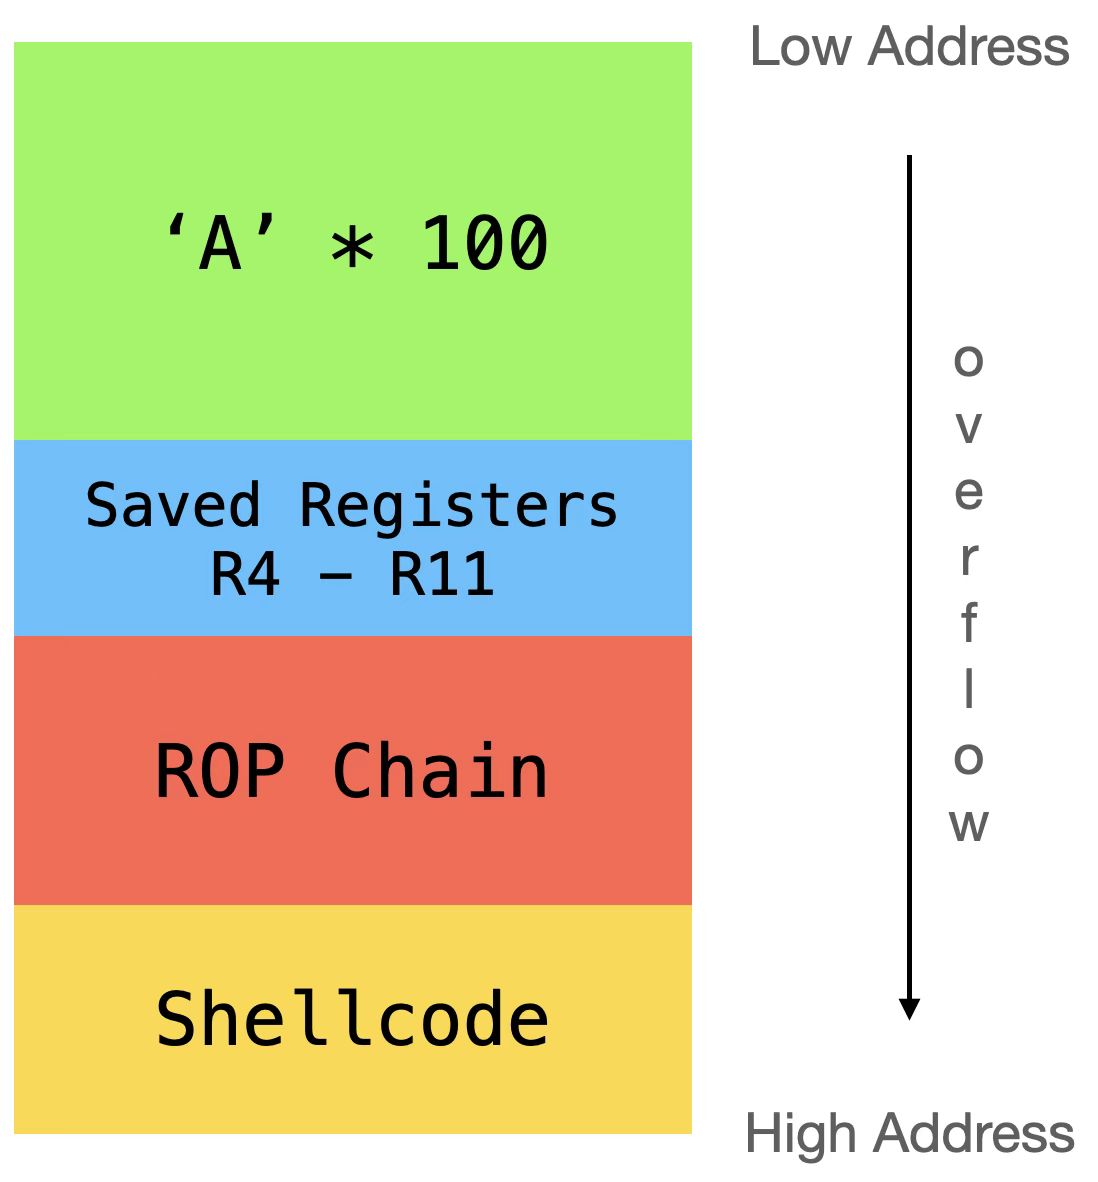 有效载荷以 100 个字节“A”开头，然后是栈中保存的寄存器 R4-R11，ROP 链从栈中复制 shellcode 并最终跳转到 shellcode